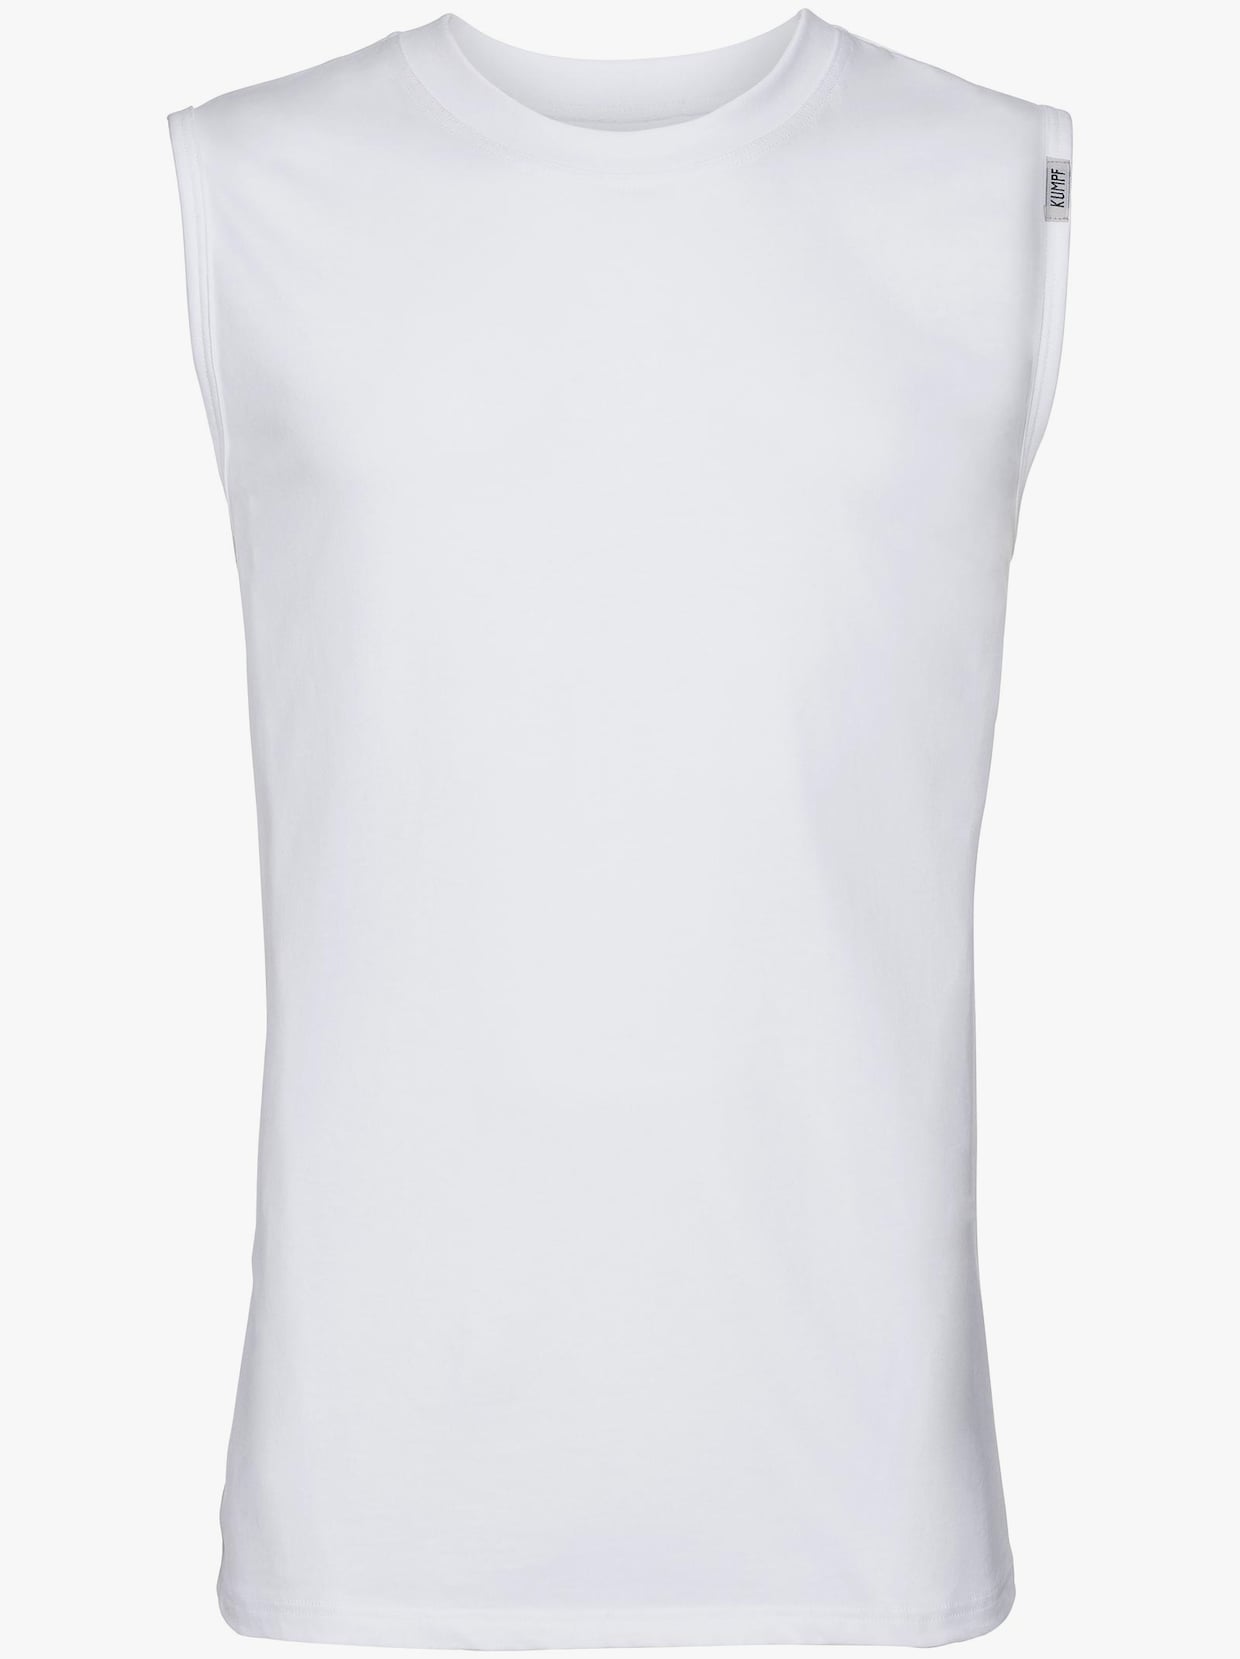 Kumpf Shirt - 2 Stück weiß